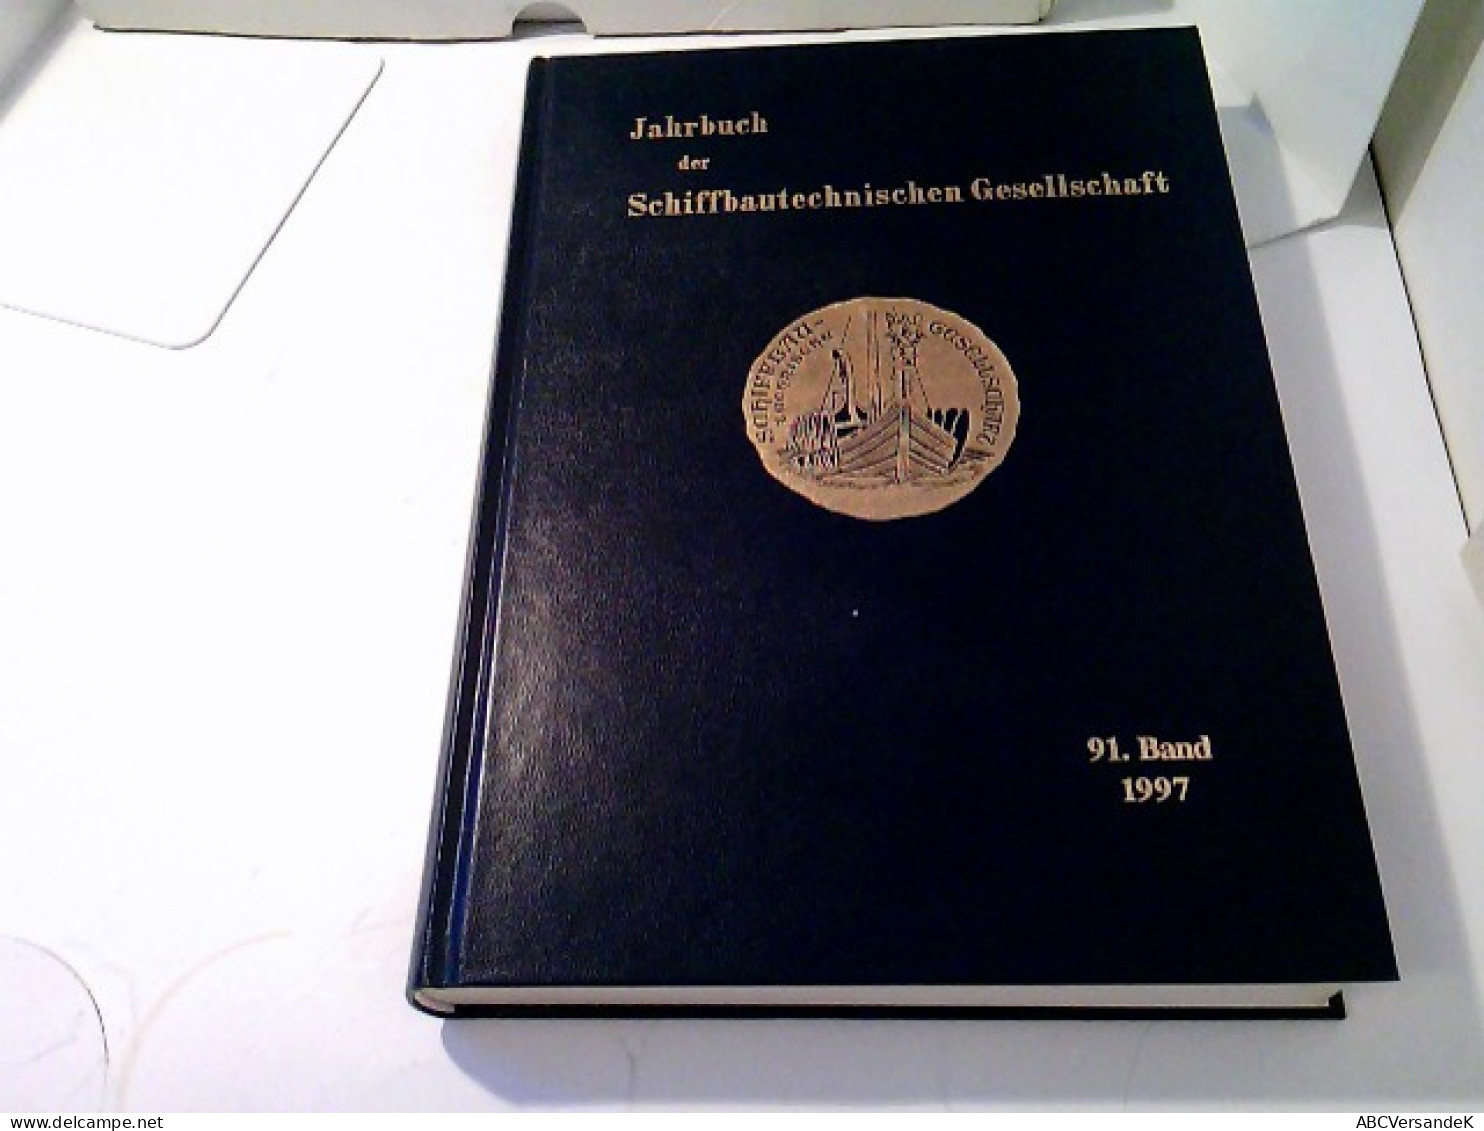 Jahrbuch Der Schiffbautechnischen Gesellschaft 91.Band 1997 - Transporte